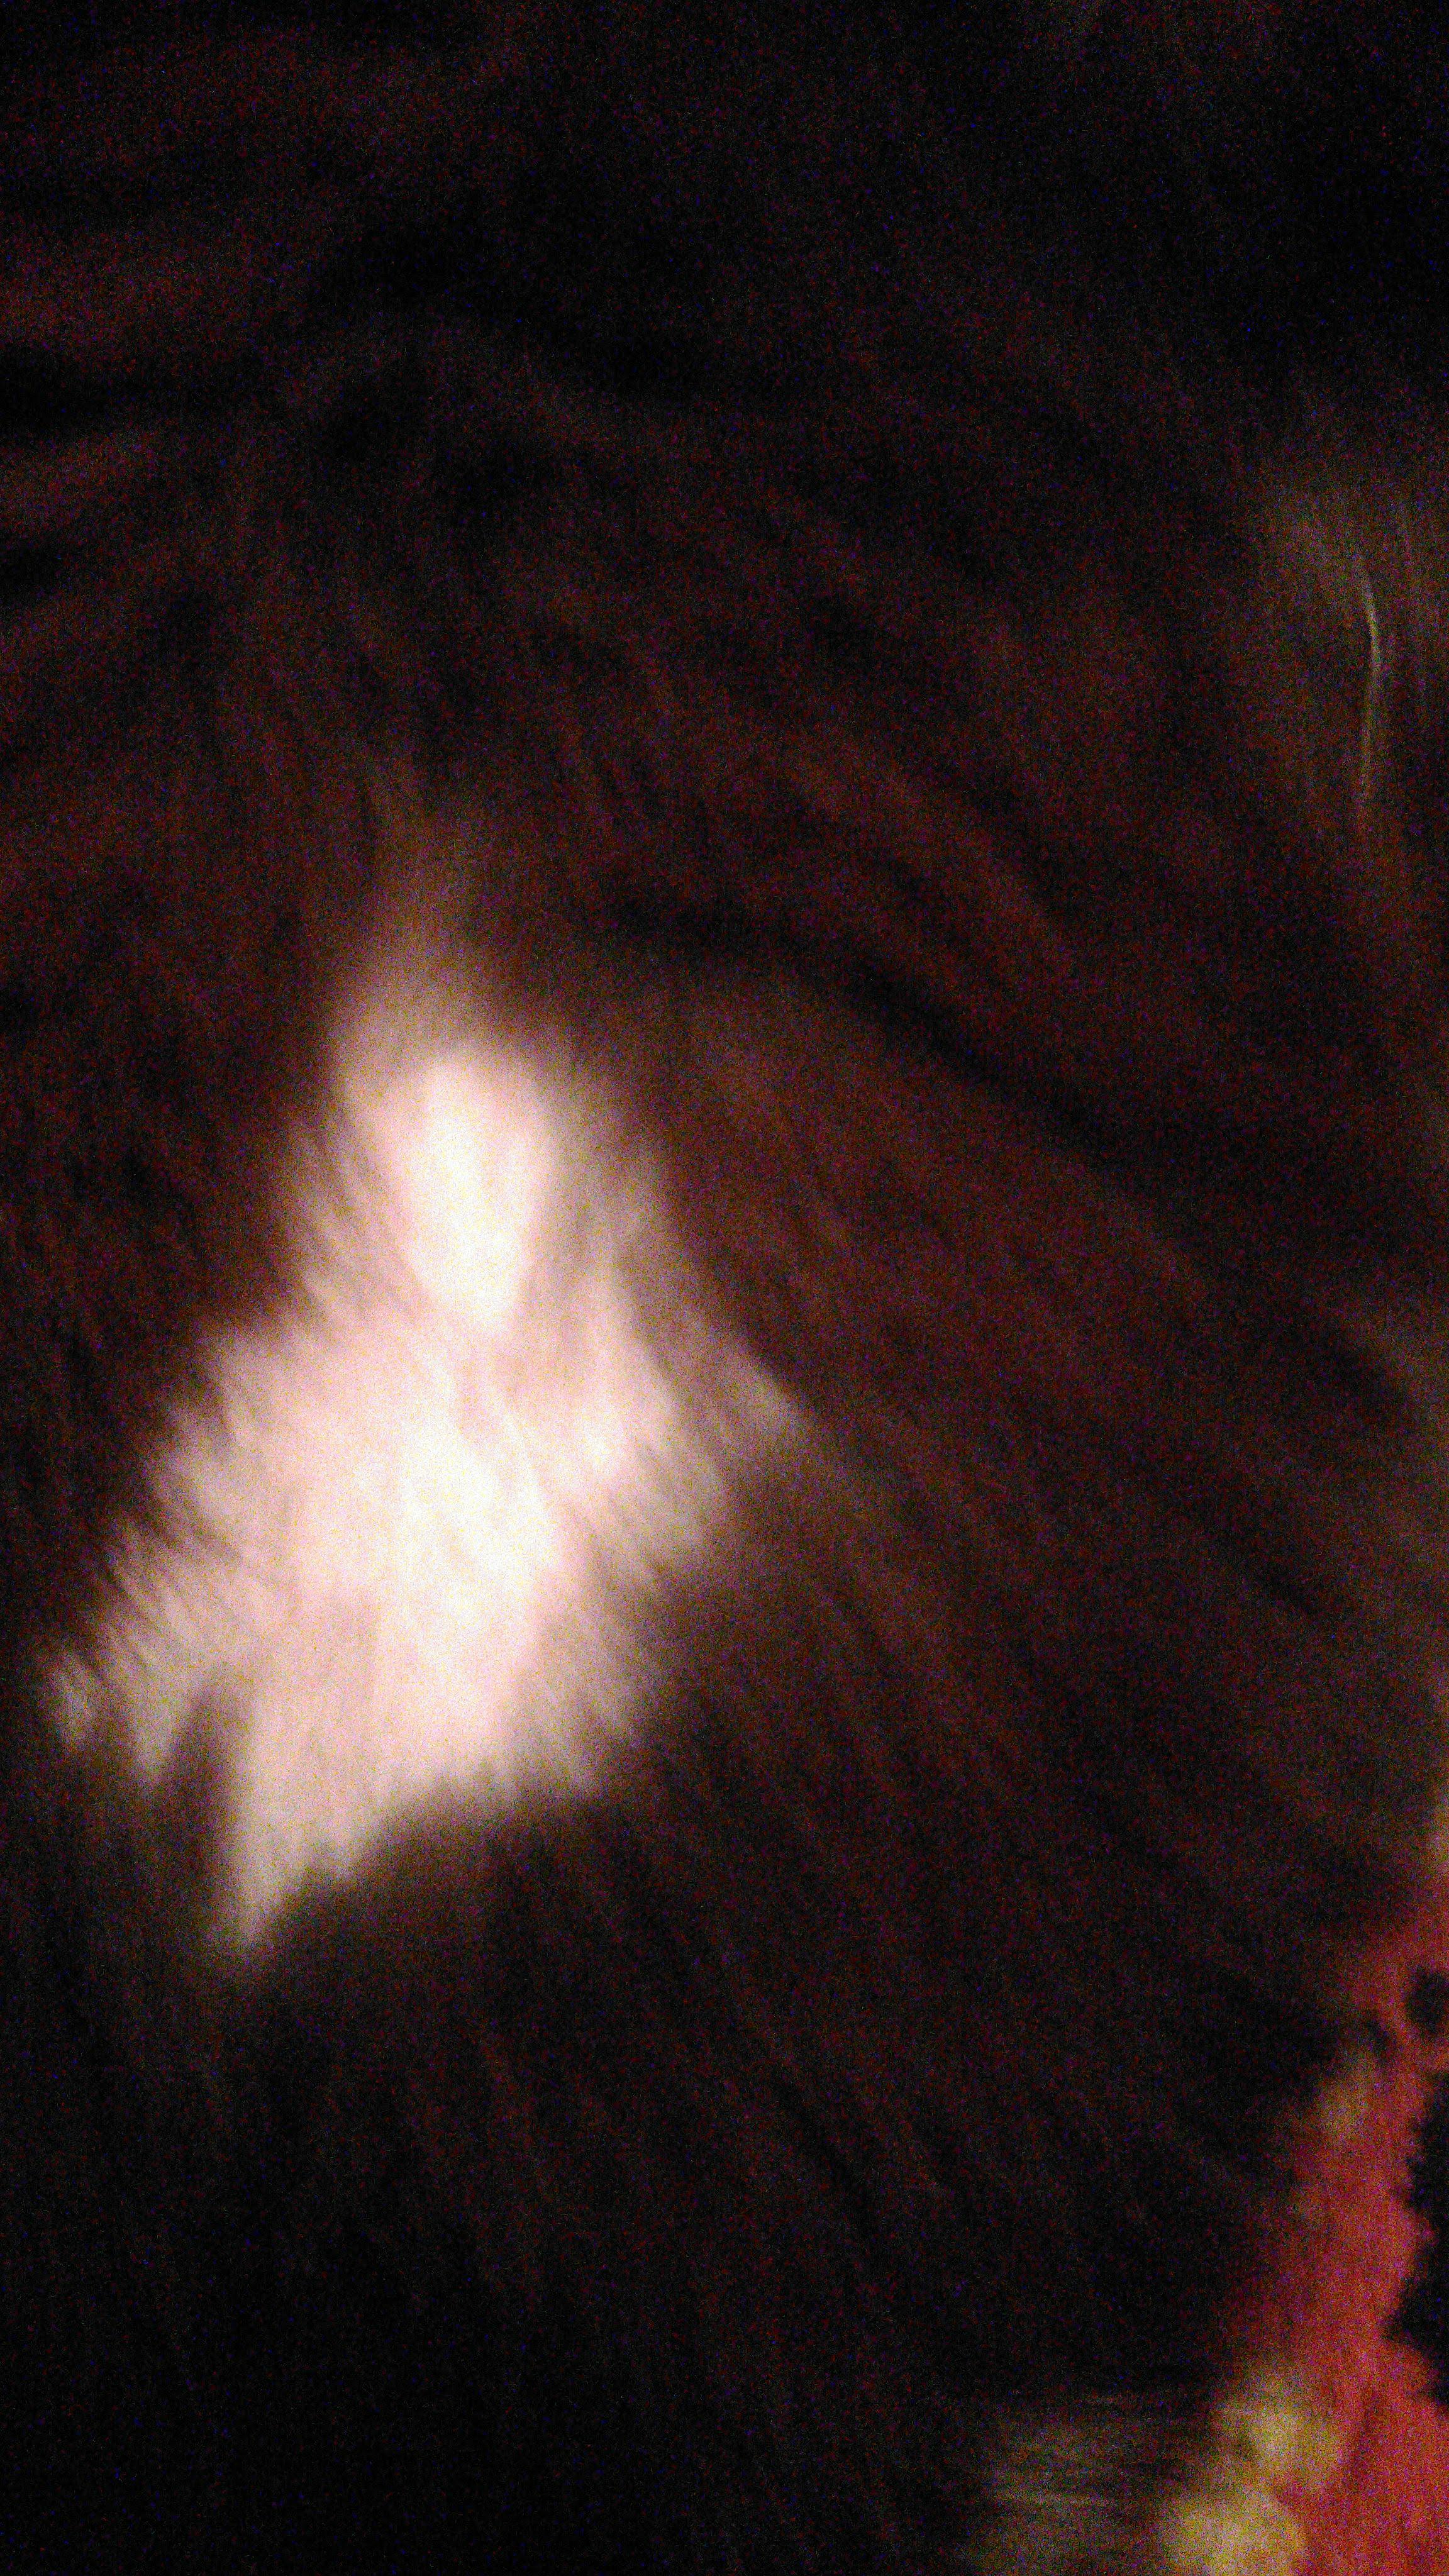 Кошка выгрызает шерсть и чешется, врачи не могут поставить диагноз